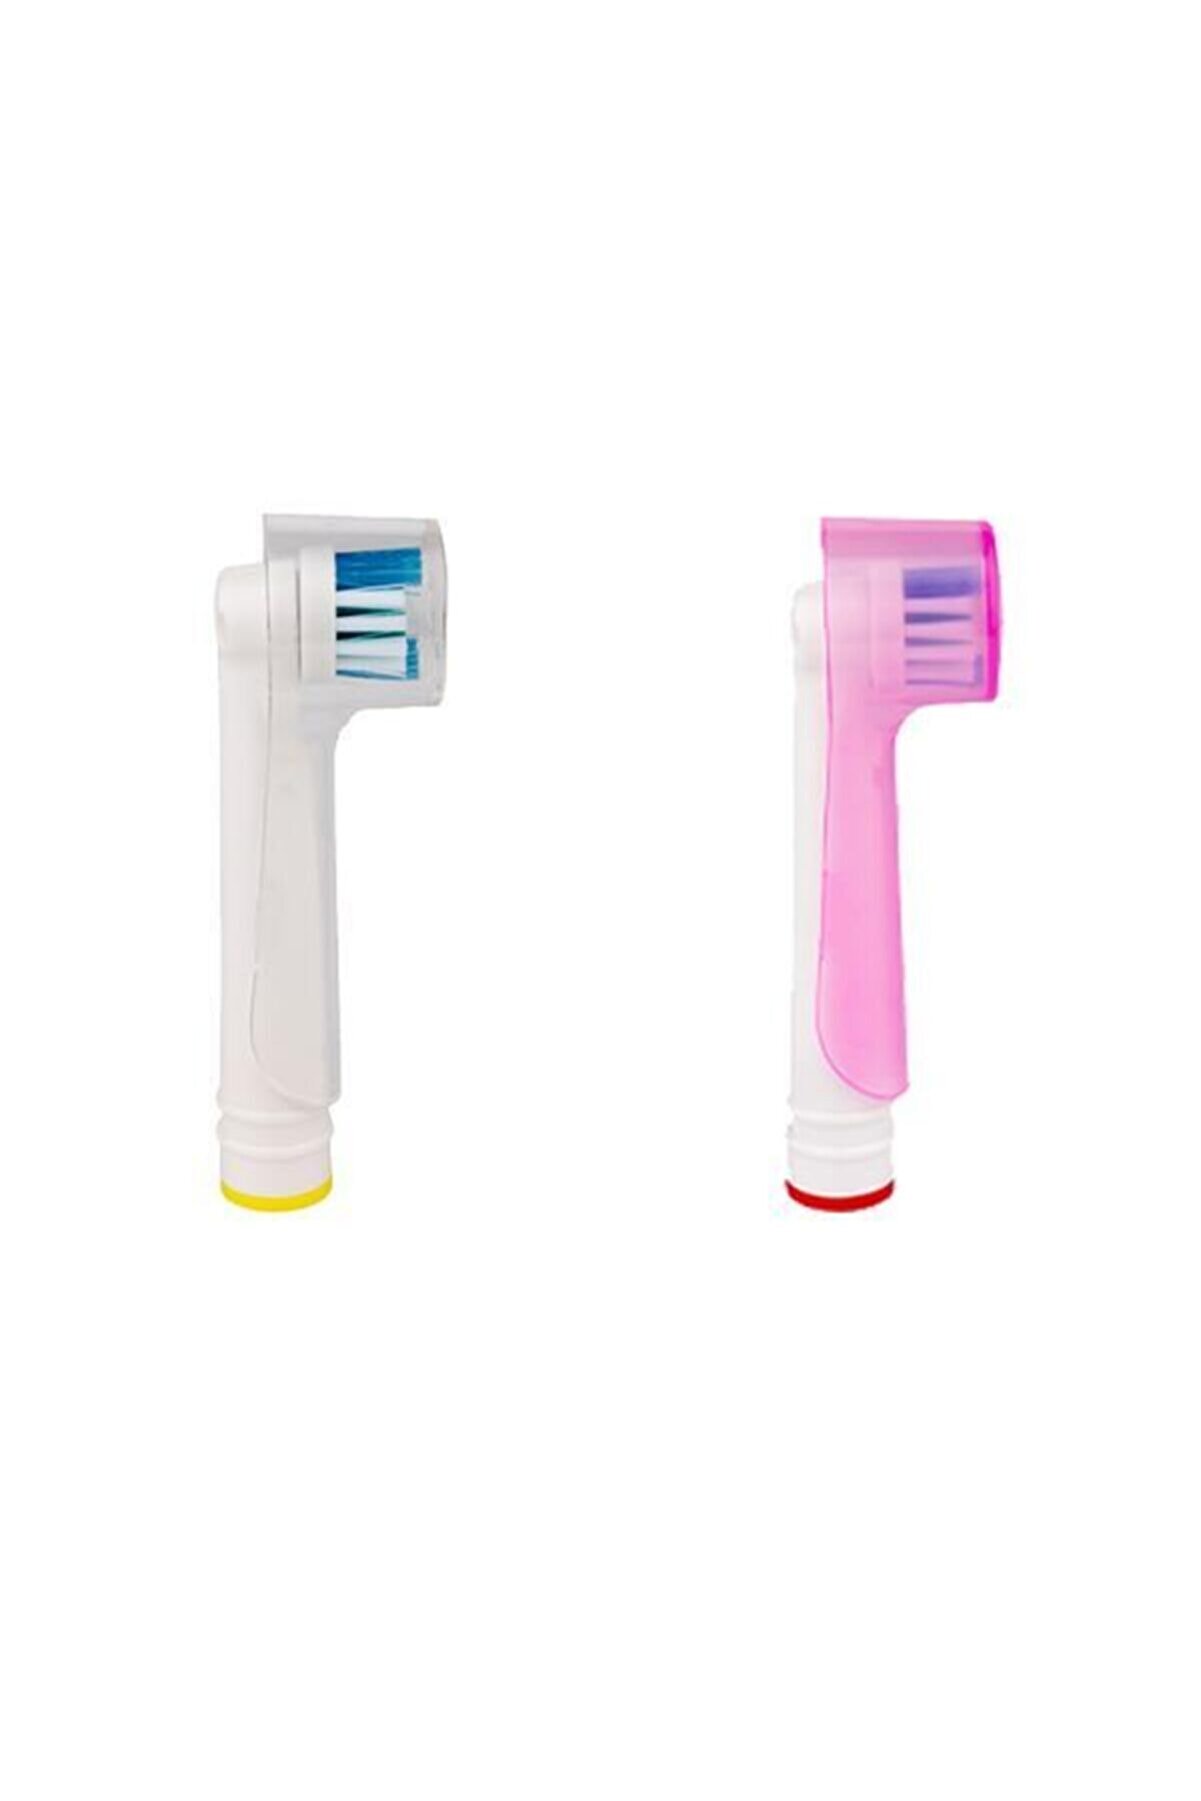 PI&GO Şarjlı Ve Pilli Diş Fırçaları Için 2 Adet Koruyucu Kapak 1 Adet Şeffaf Ve 1 Adet Pembe